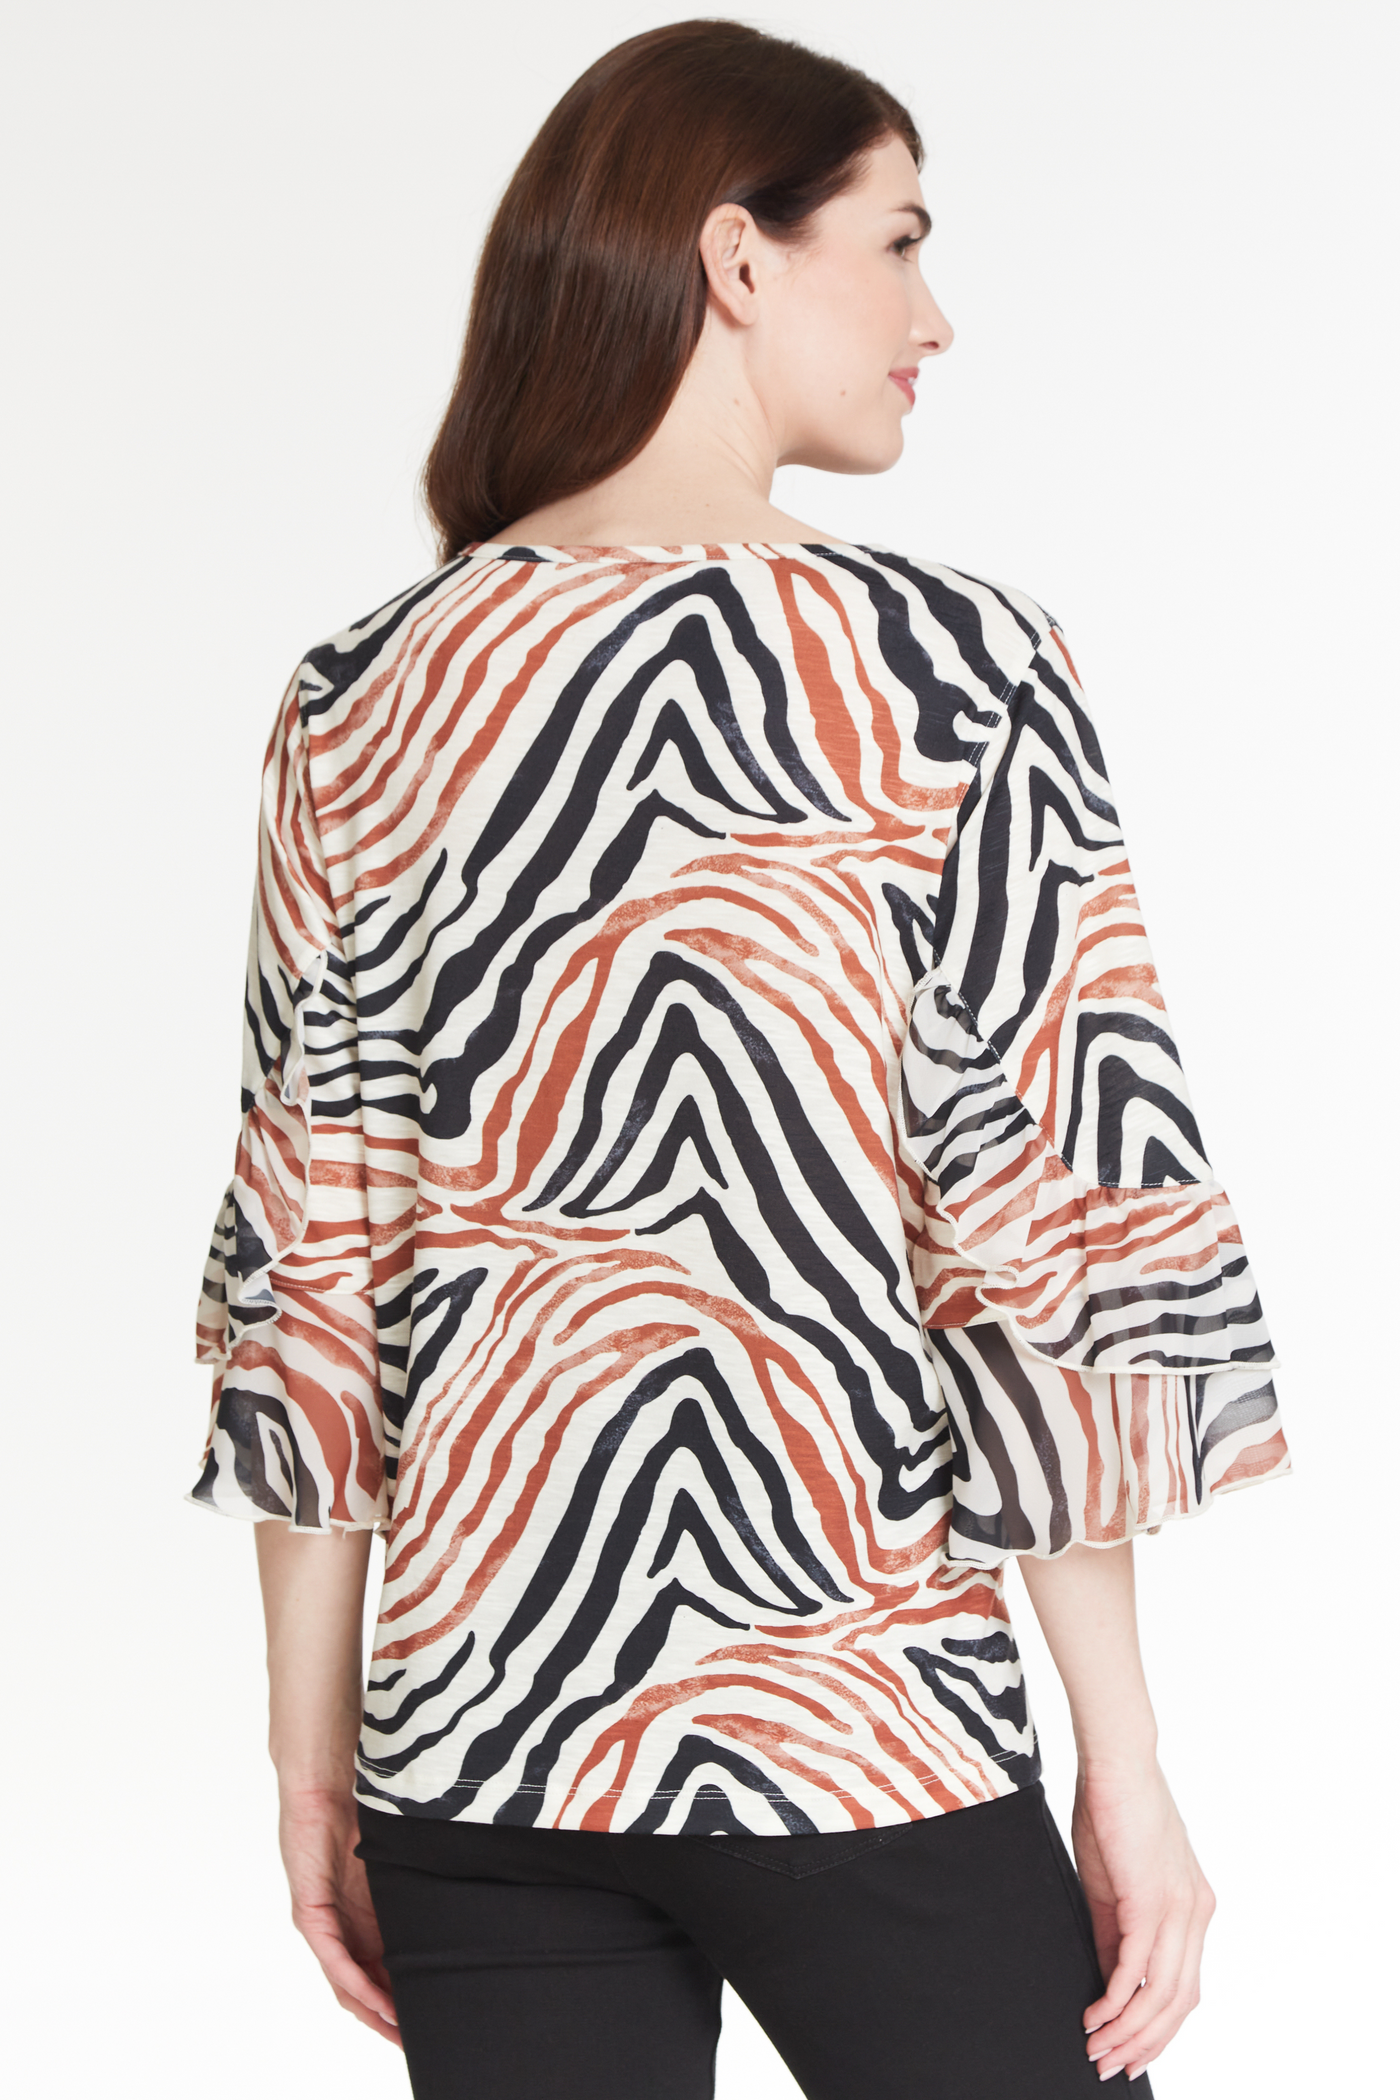 Ruffle Sleeve Knit Top - Women's - Zebra Multi